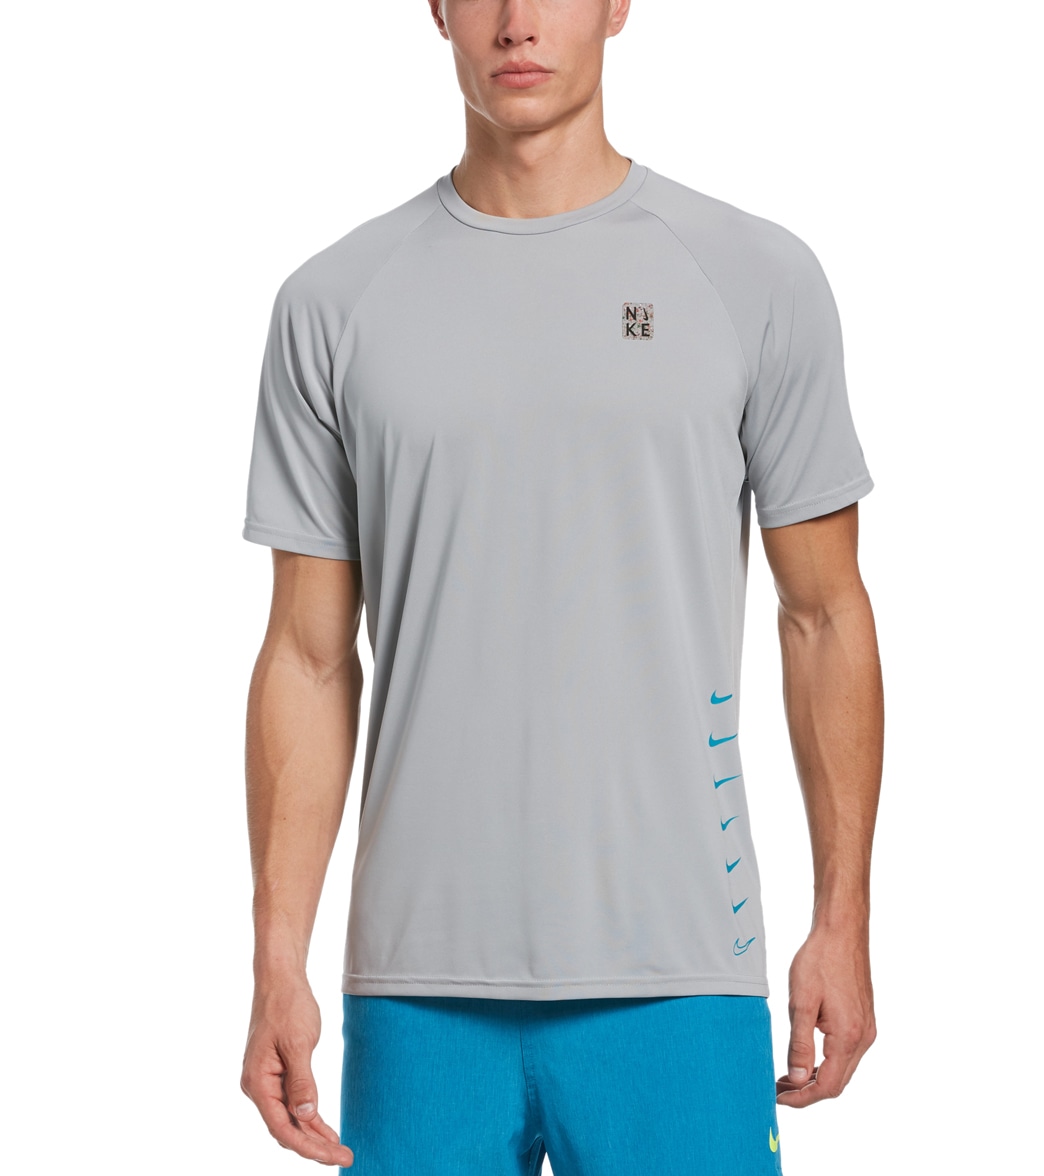 Nike Men's Multi Swoosh Short Sleeve Hydro Rashguard Shirt - Light Smoke Grey Medium - Swimoutlet.com